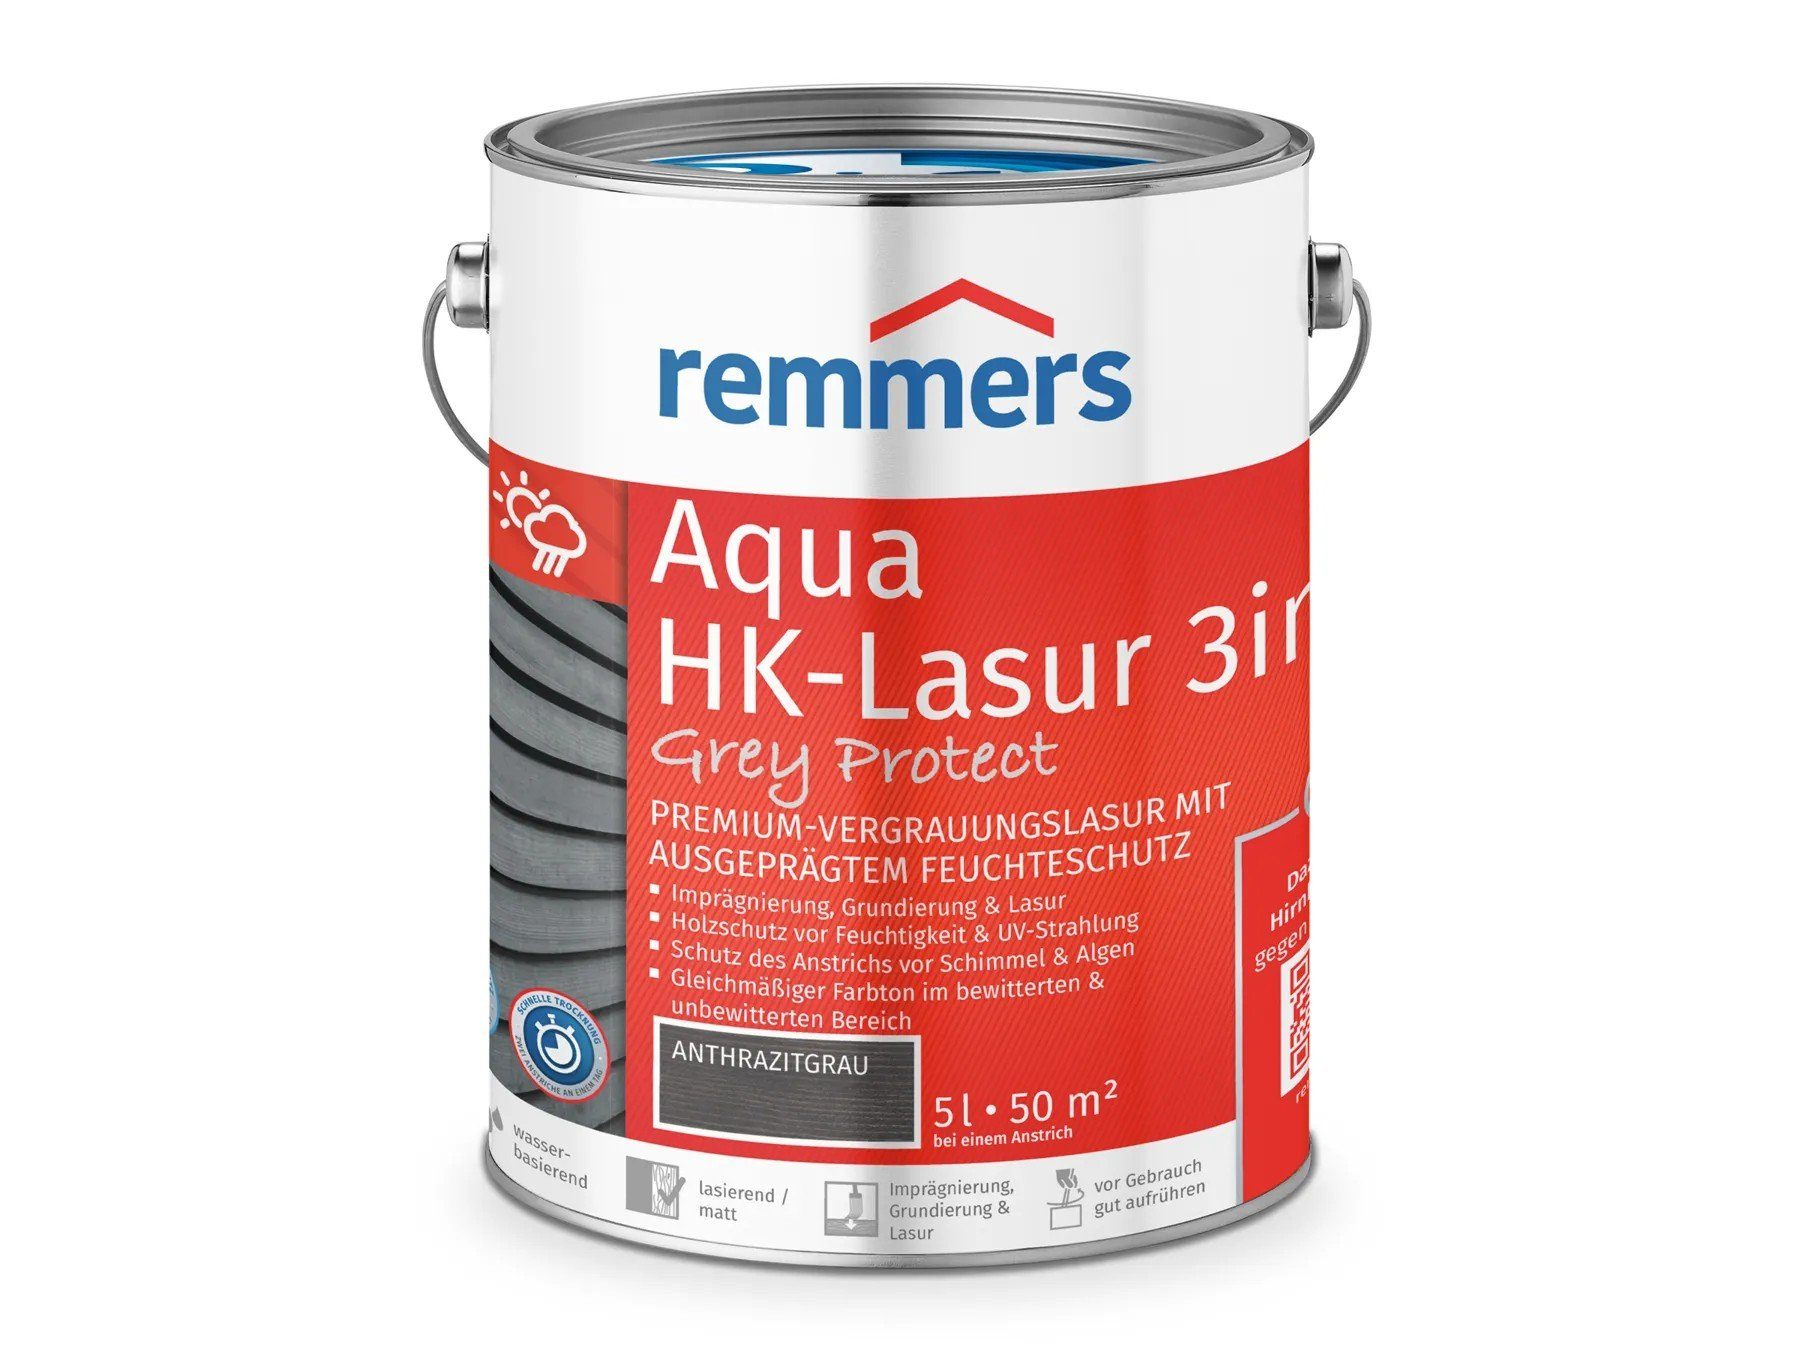 Remmers Holzschutzlasur Aqua HK-Lasur 3in1 Grey Protect